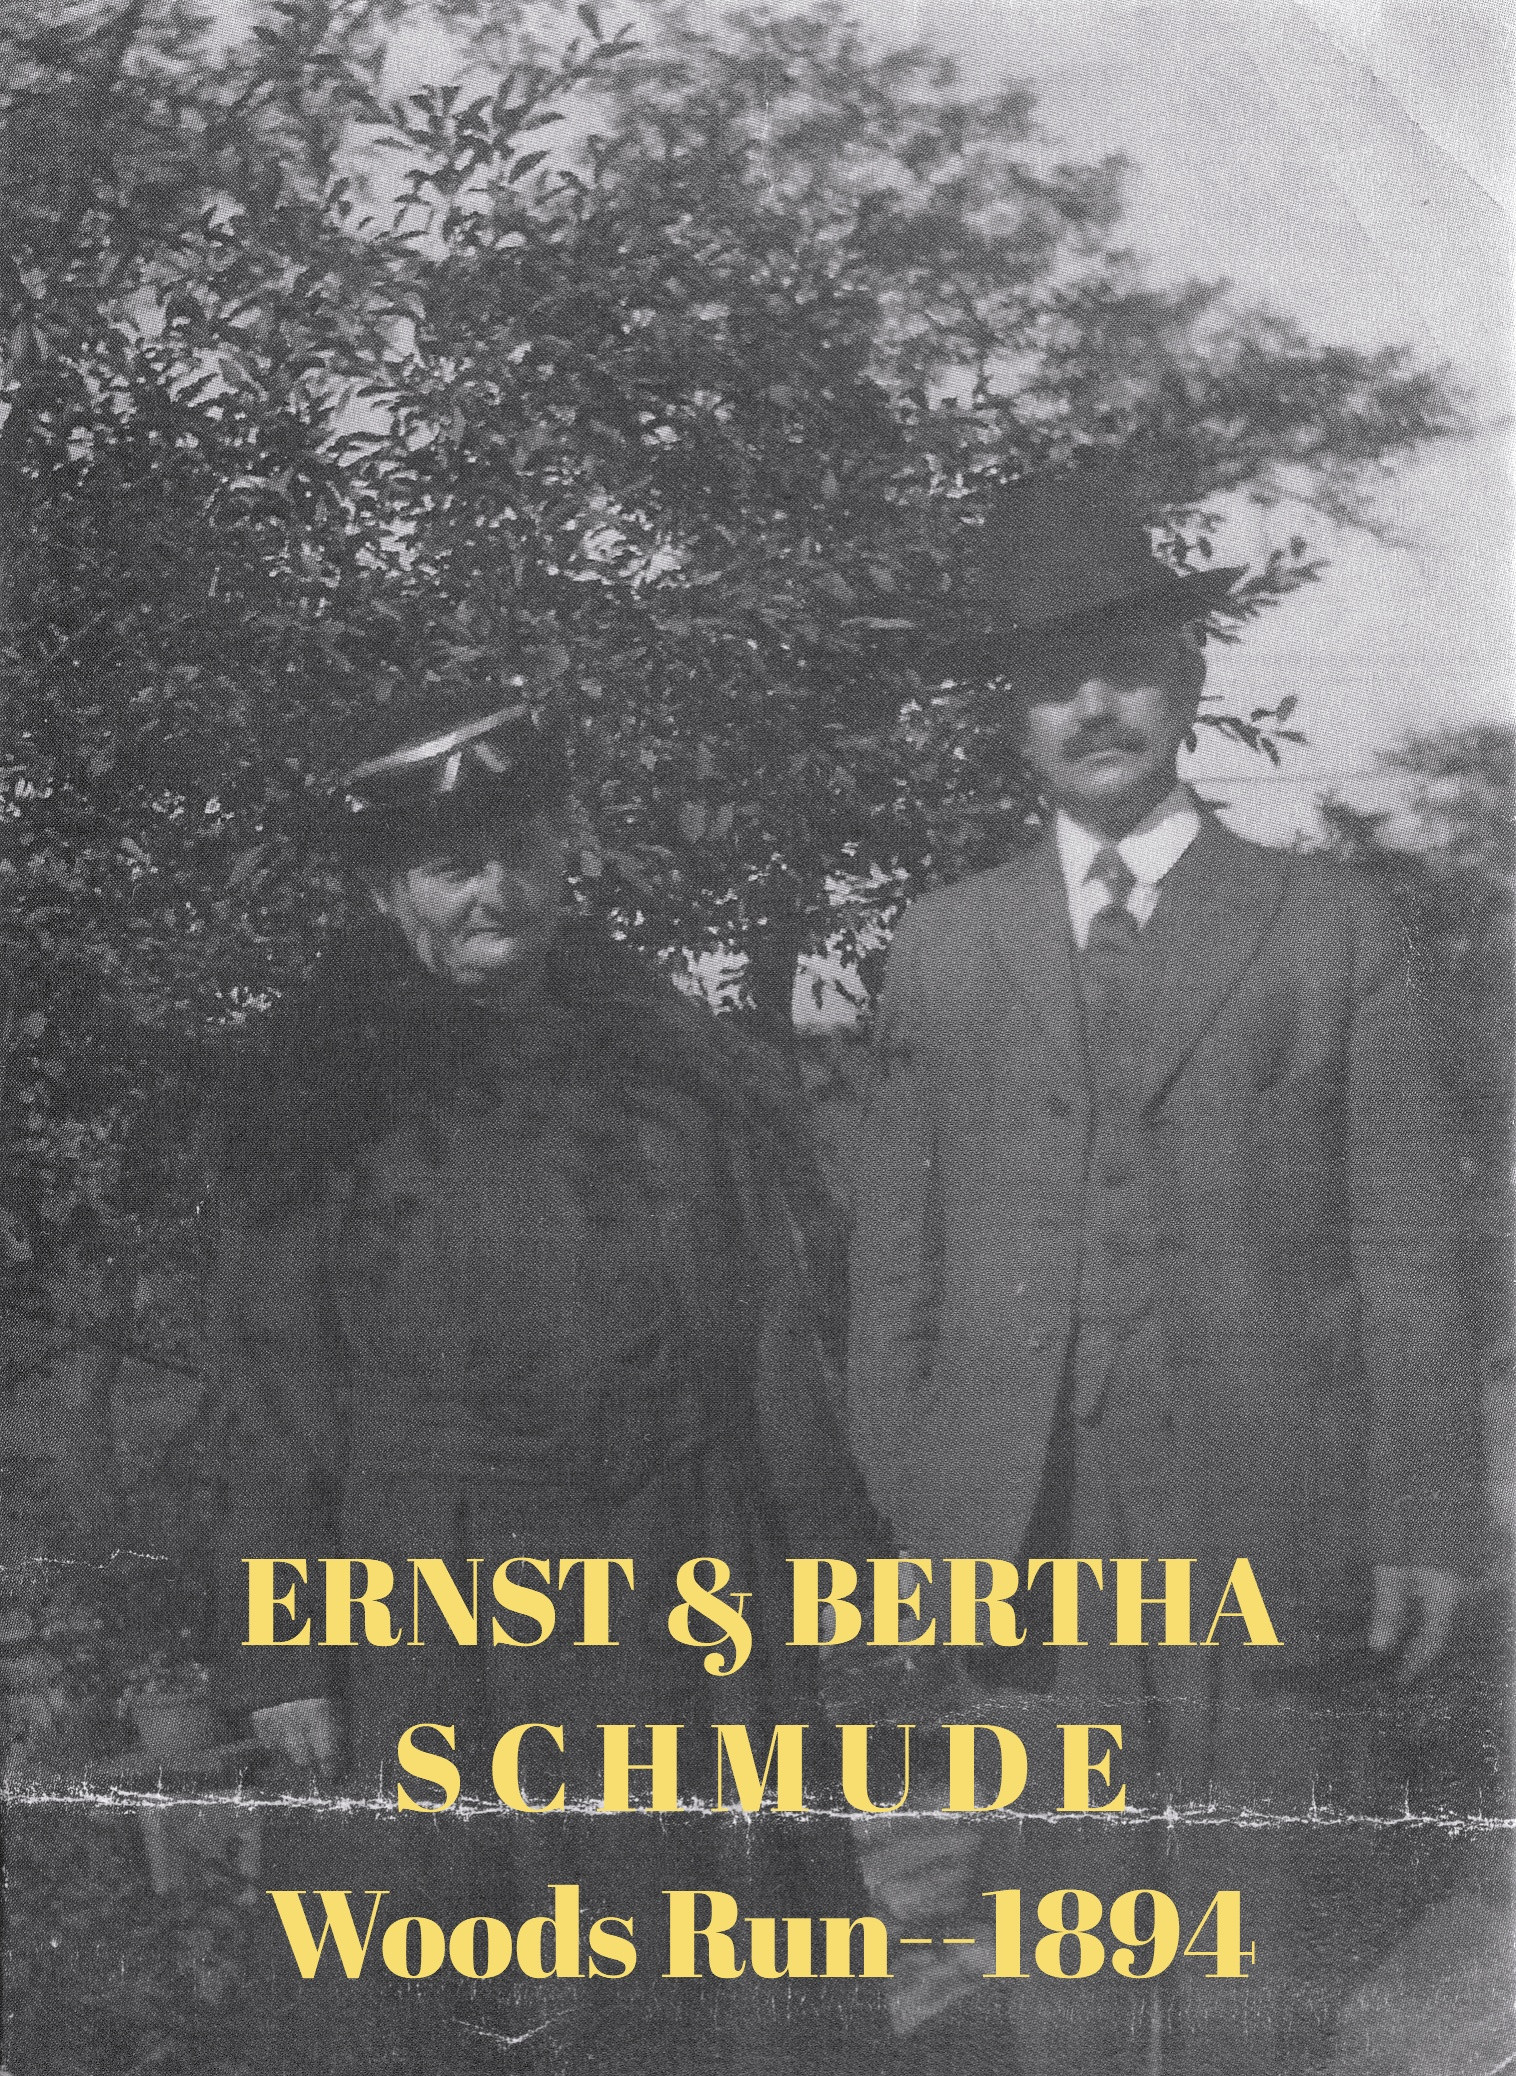 ERNST & BERTHA SCHMUDE